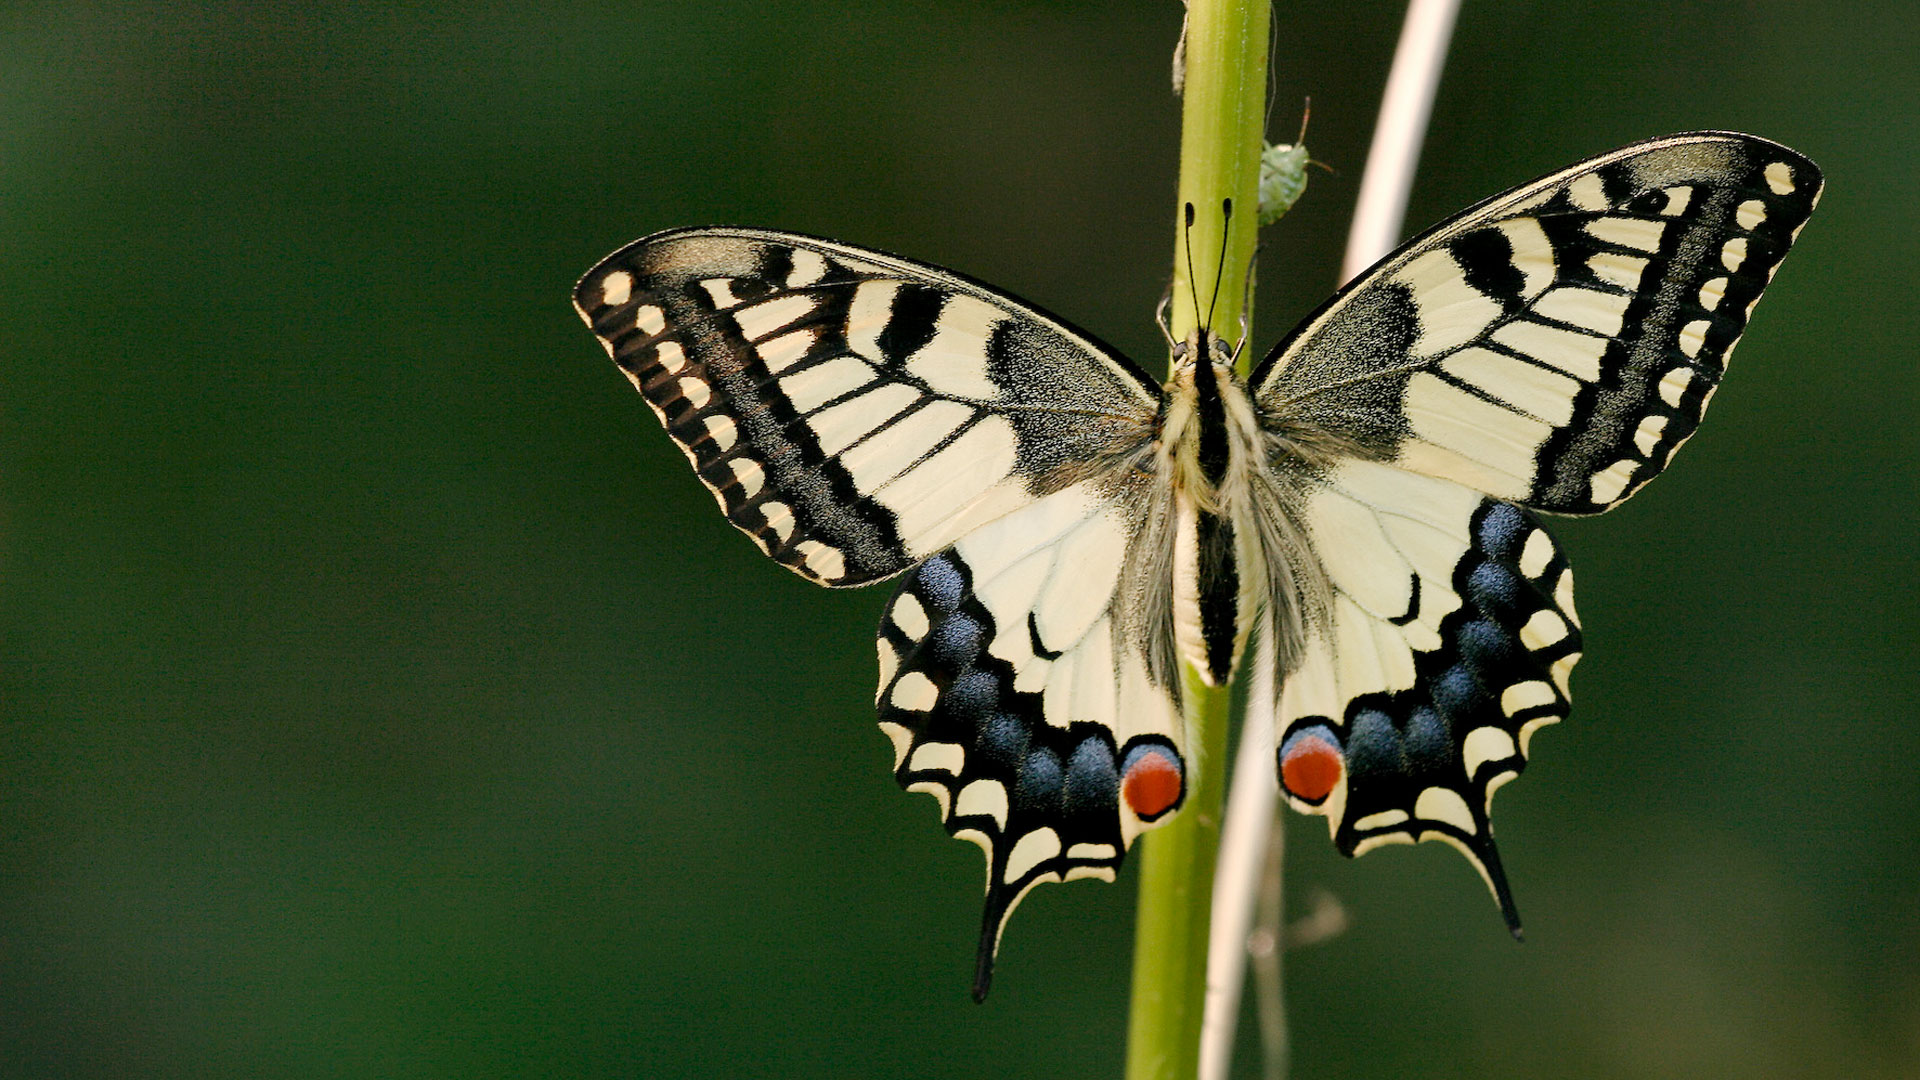 Unsere Schmetterlinge verschwinden. Woran liegt das und was kann jeder selbst tun?